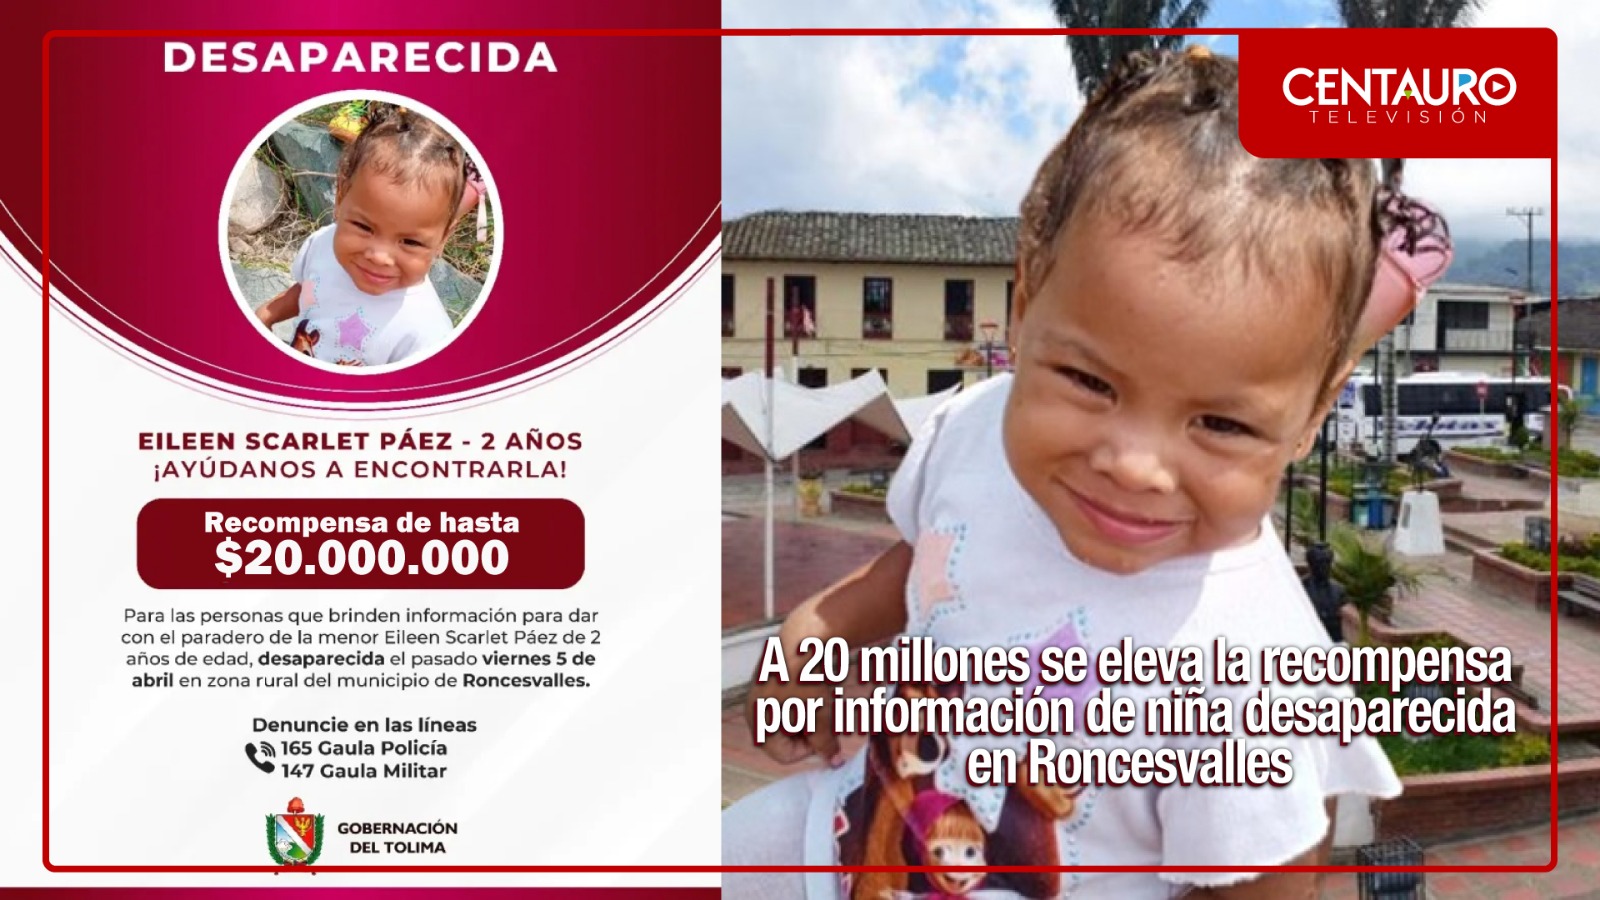 A $20 millones se eleva la recompensa por información que conduzca al paradero de la niña desaparecida en Roncesvalles